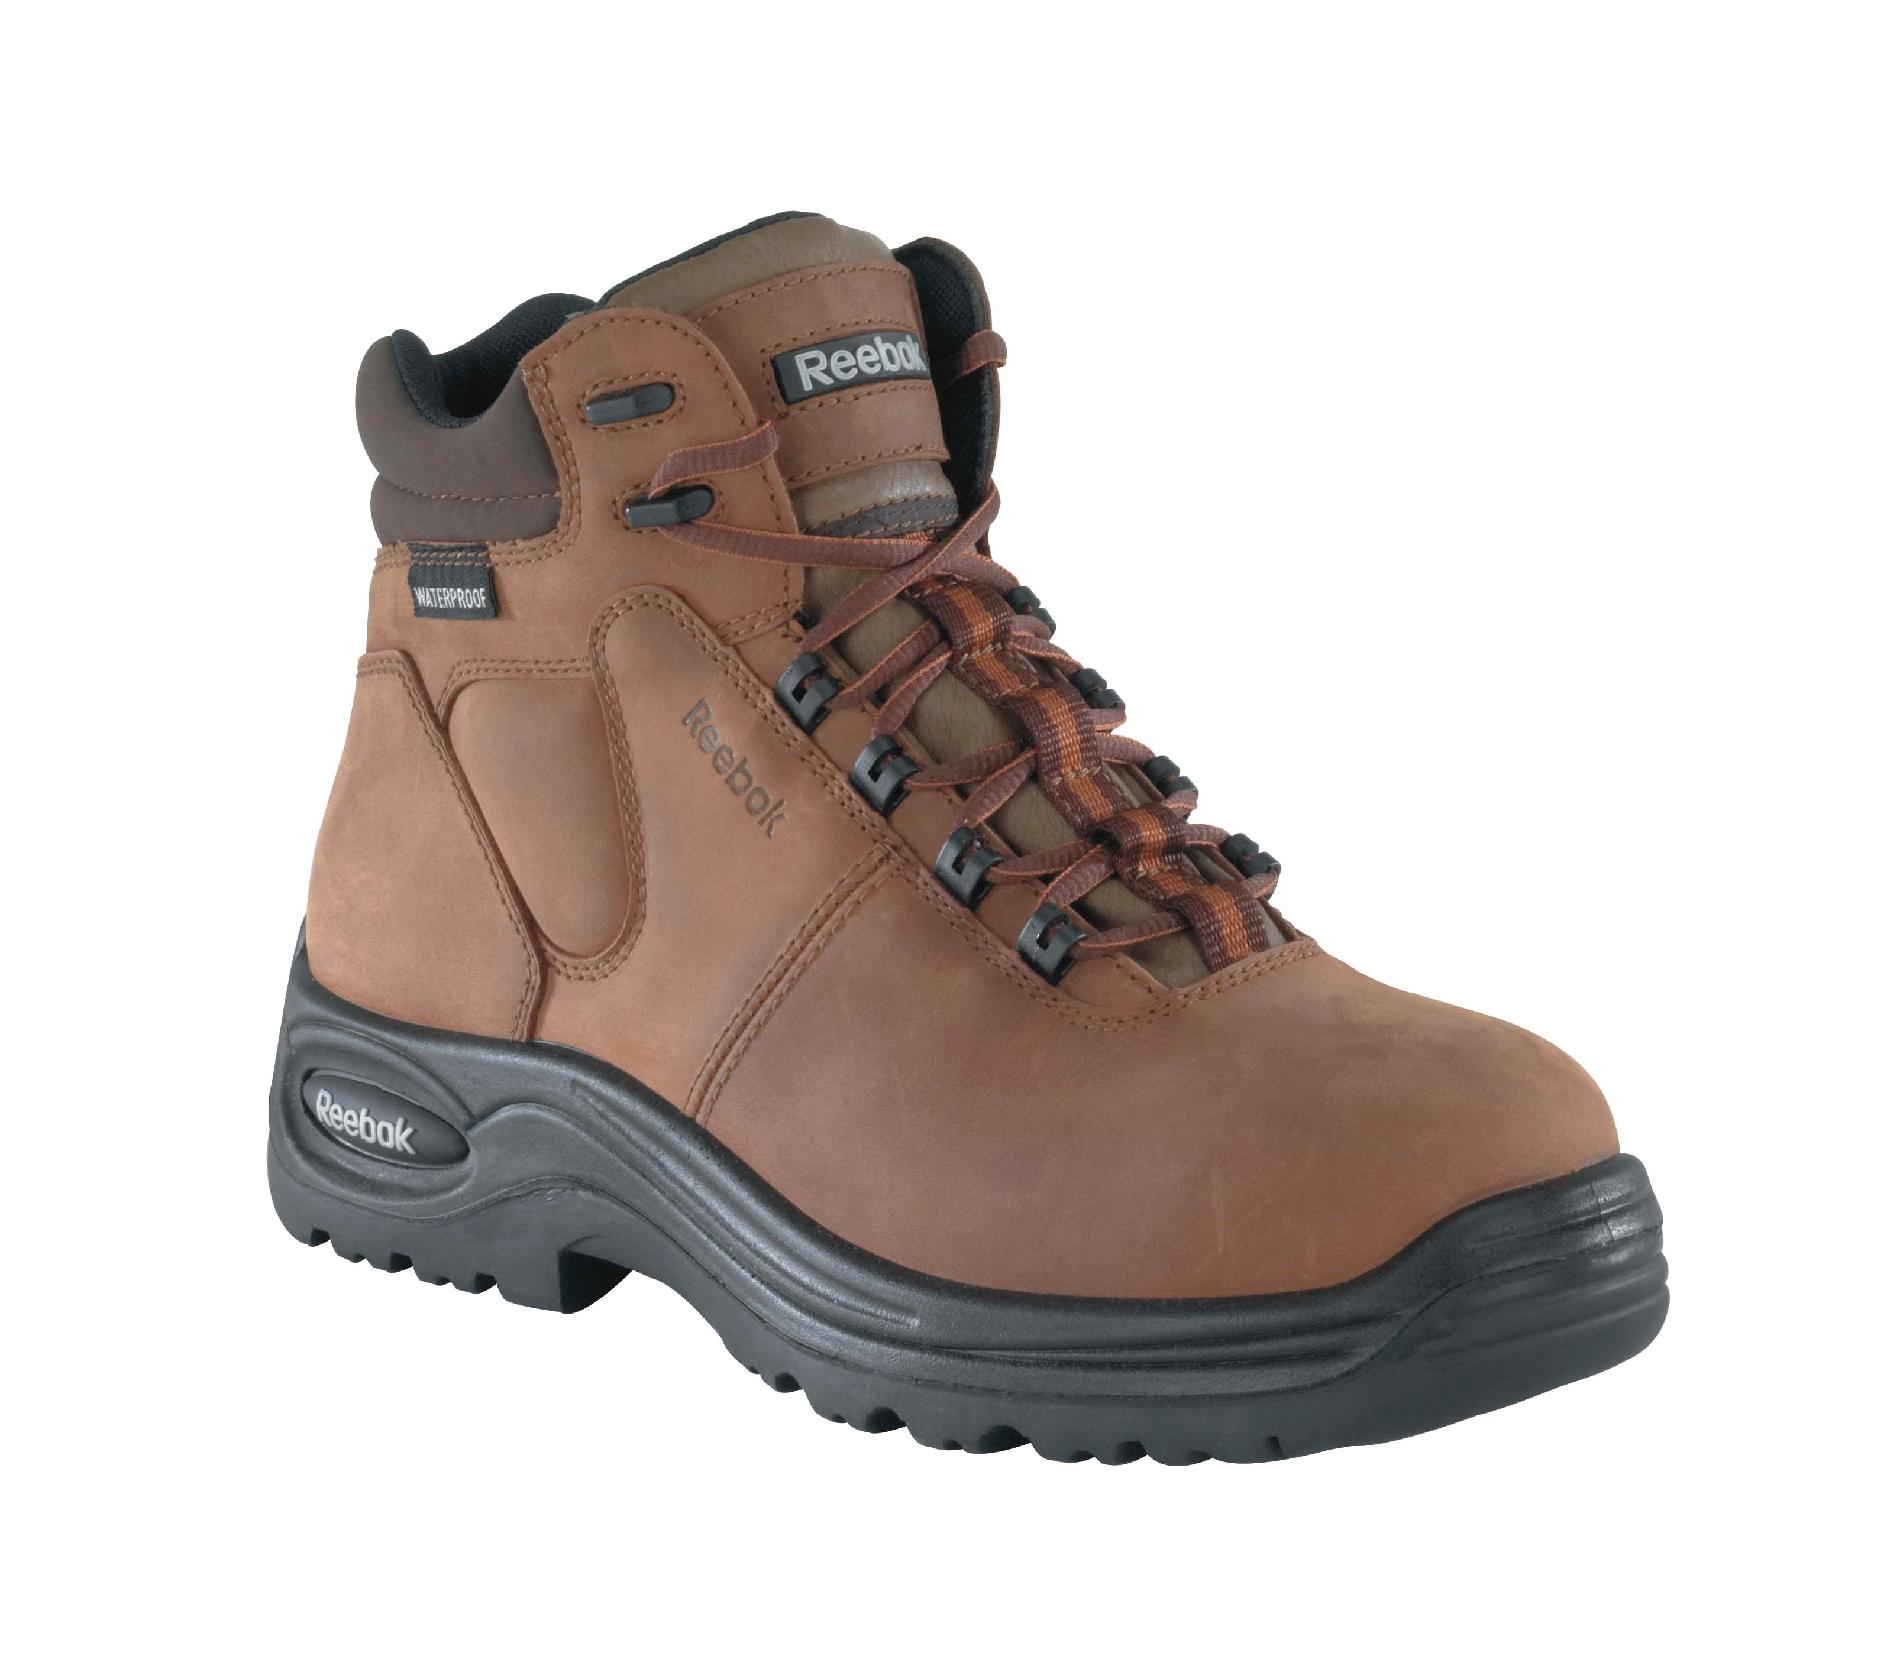 Reebok Men's dark brown Trainex comp toe 6 inch waterproof sport boot